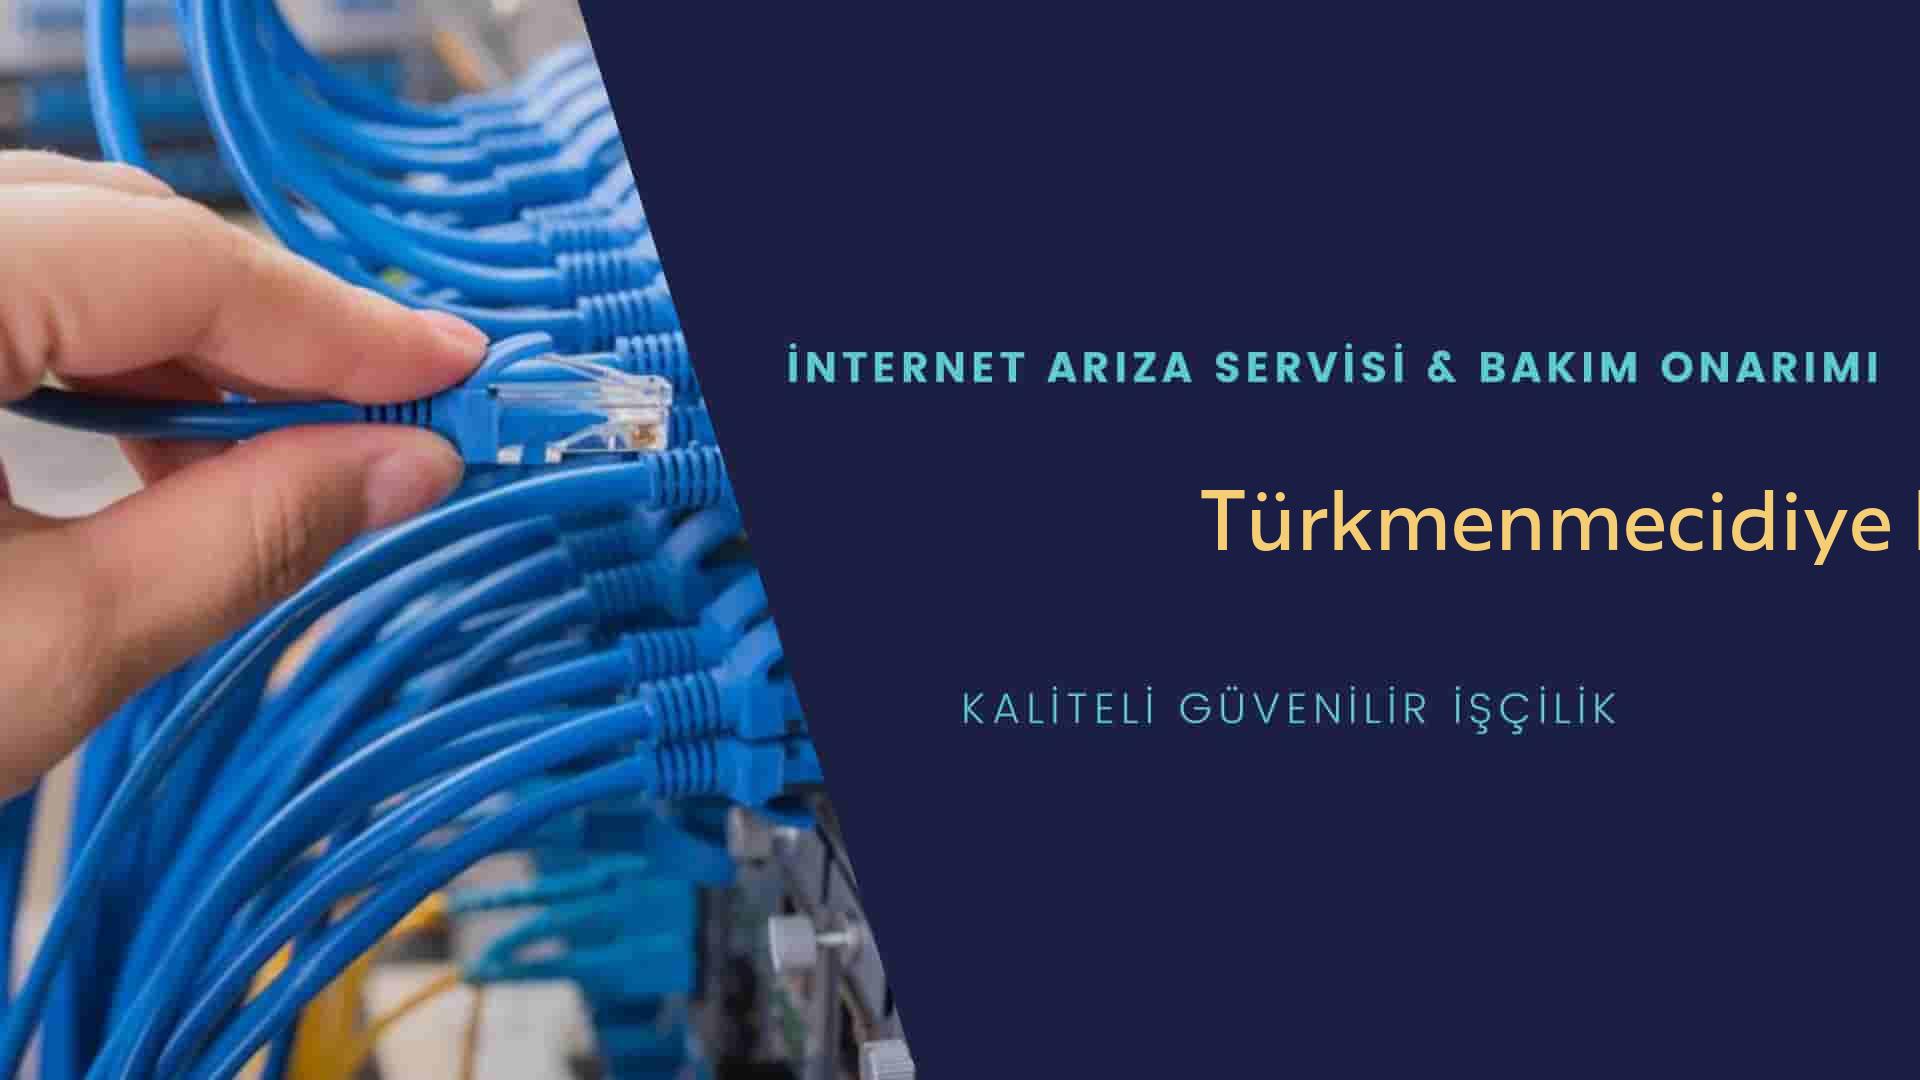 Türkmenmecidiye Köyü internet kablosu çekimi yapan yerler veya elektrikçiler mi? arıyorsunuz doğru yerdesiniz o zaman sizlere 7/24 yardımcı olacak profesyonel ustalarımız bir telefon kadar yakındır size.